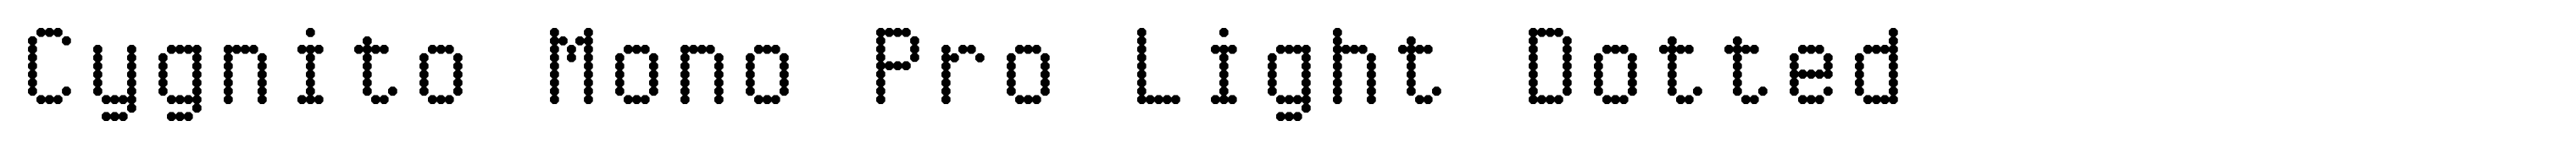 Cygnito Mono Pro Light Dotted